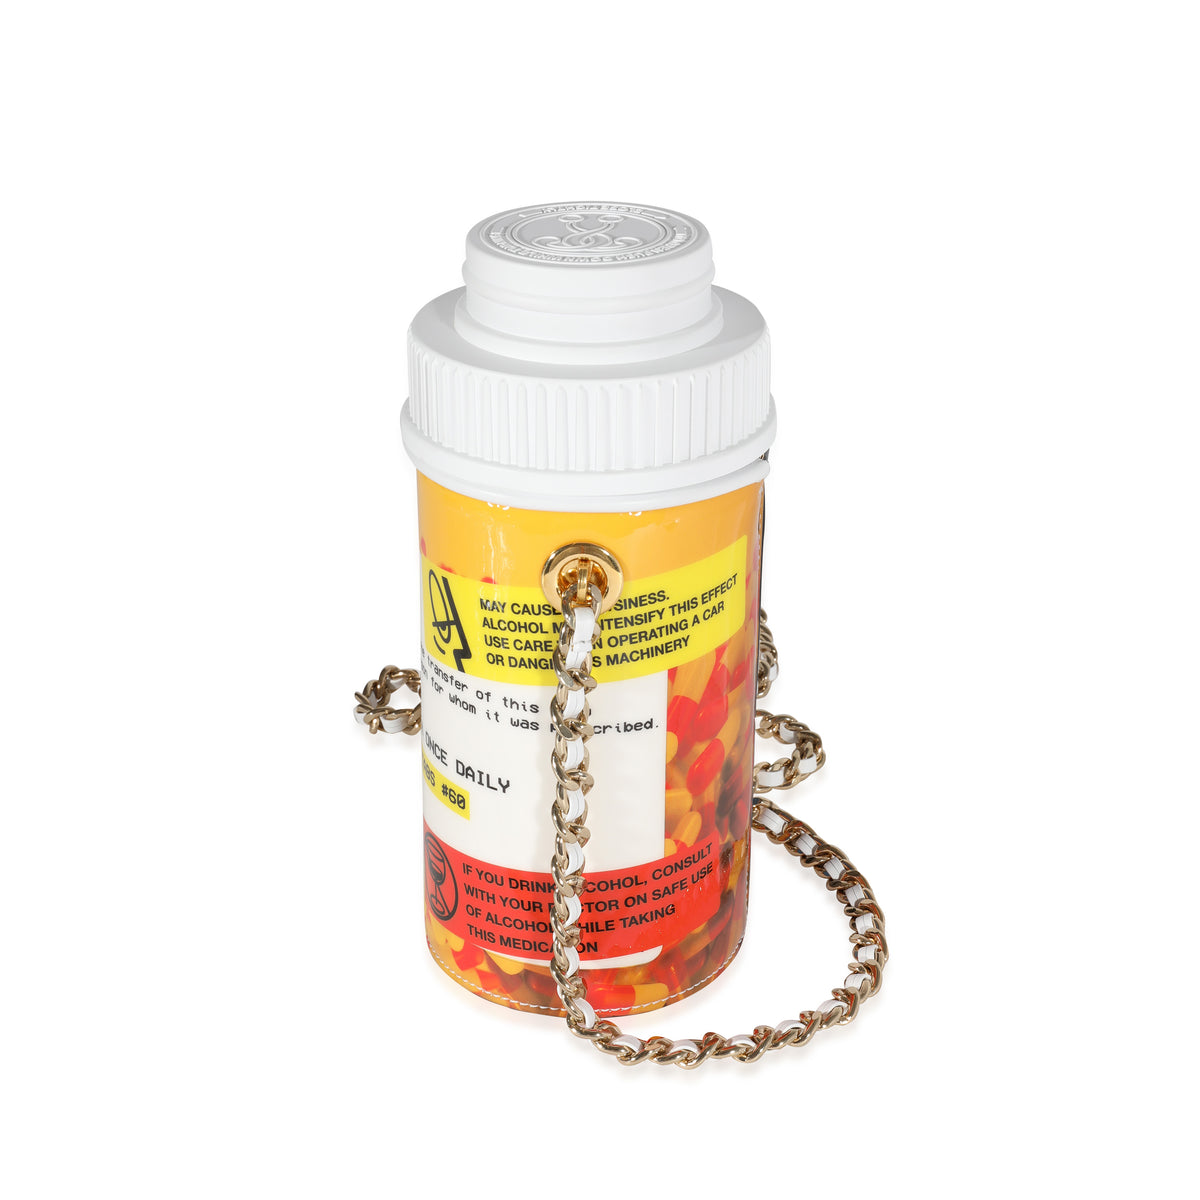 LV Monogram Pill Bottle - Small